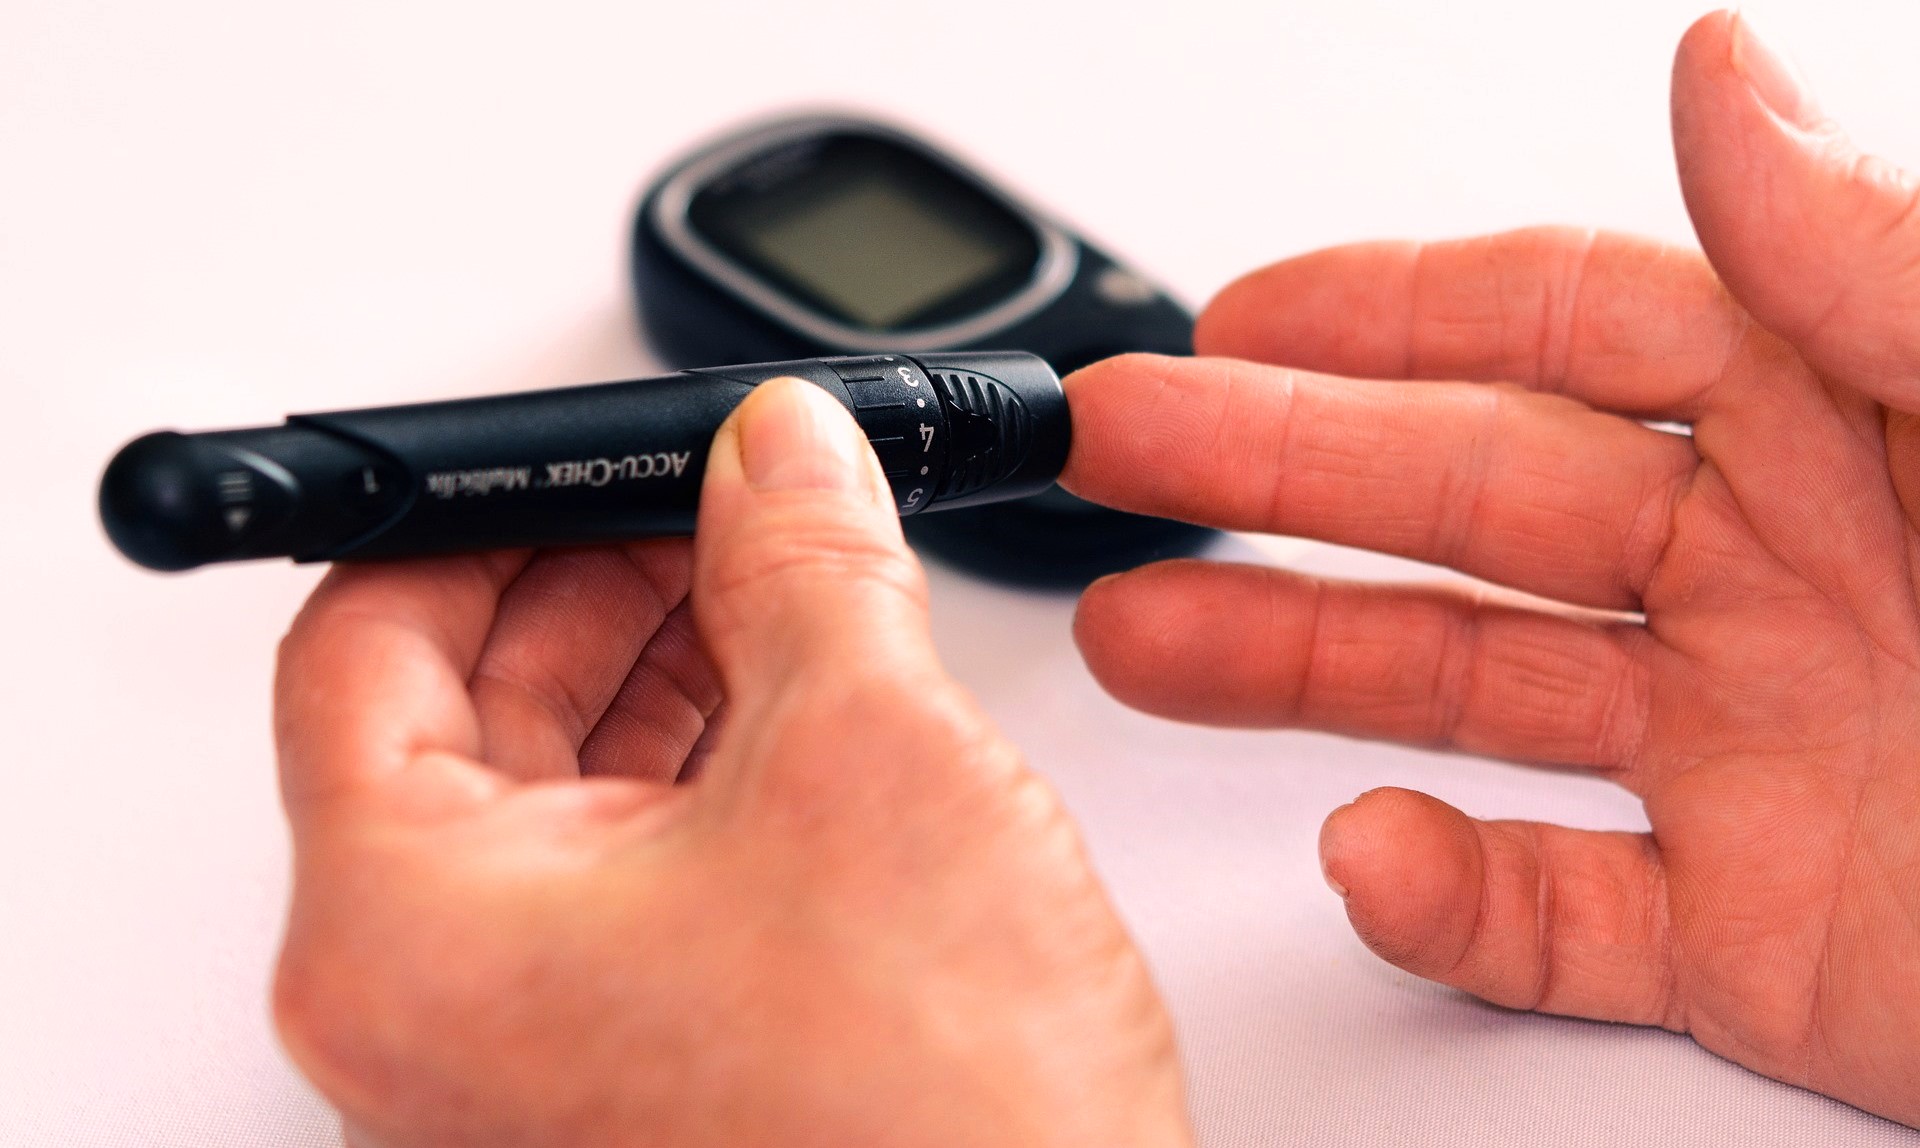 Fear of Diabetes Makes Non-Diabetic Often Check Blood Sugar